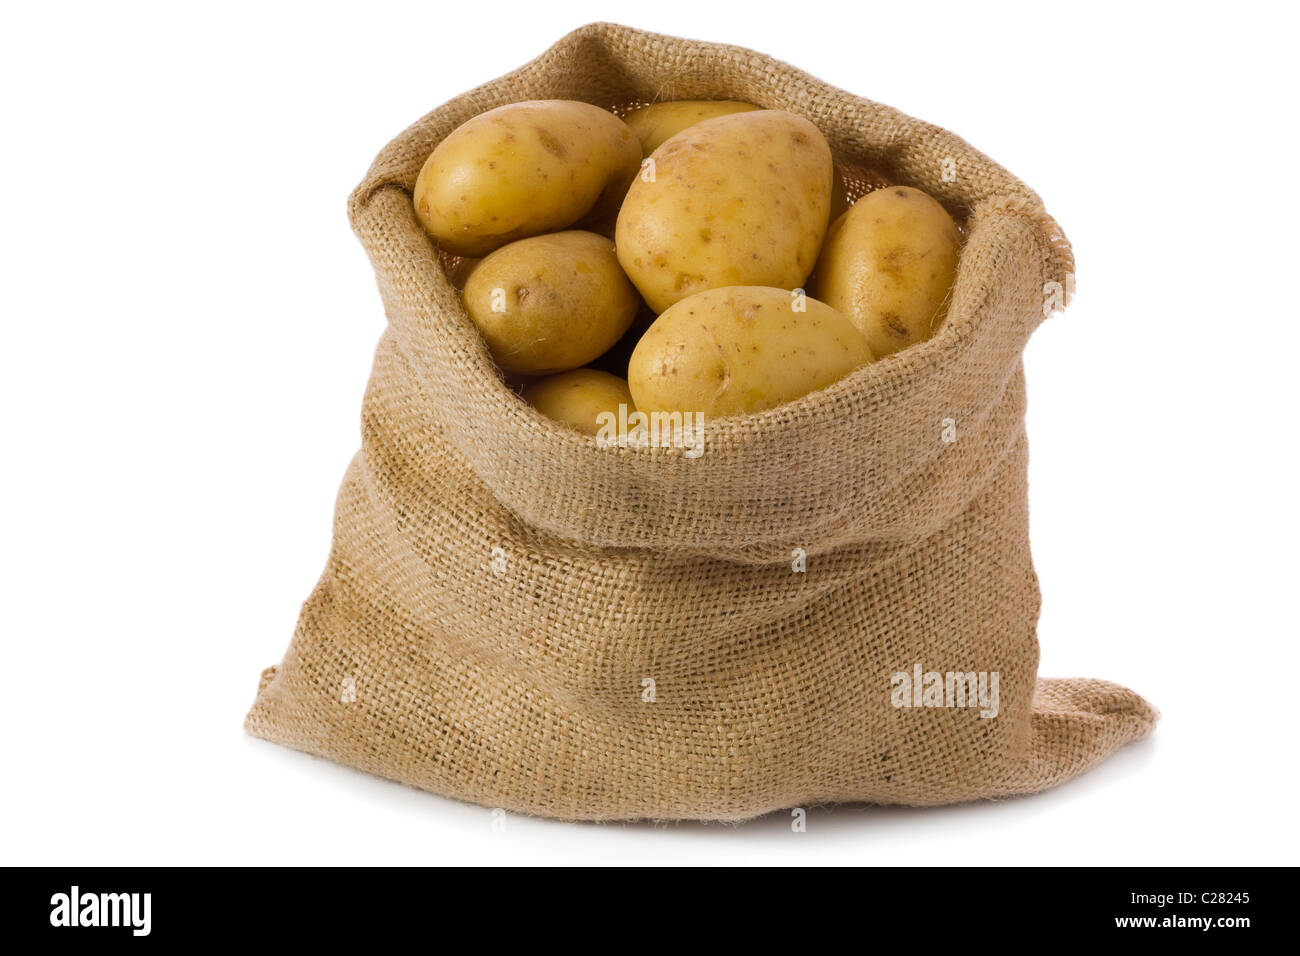 Materie le patate in una sacca di tela isolati su sfondo bianco Foto Stock